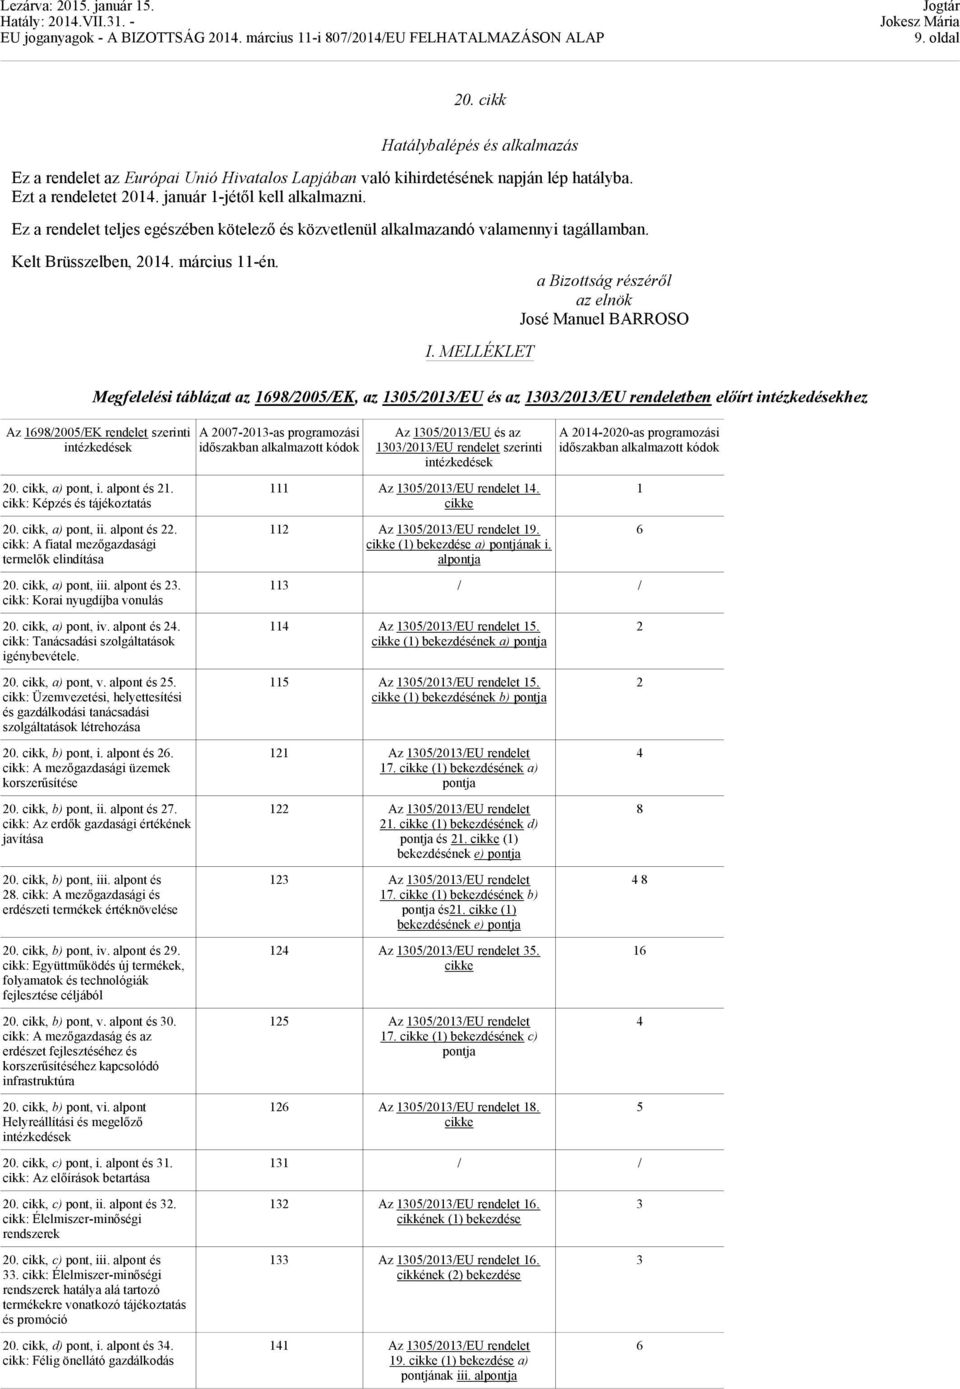 MELLÉKLET a Bizottság részéről az elnök José Manuel BARROSO Megfelelési táblázat az 19/2005/EK, az 1305/2013/EU és az 1303/2013/EU rendeletben előírt intézkedésekhez Az 19/2005/EK rendelet szerinti